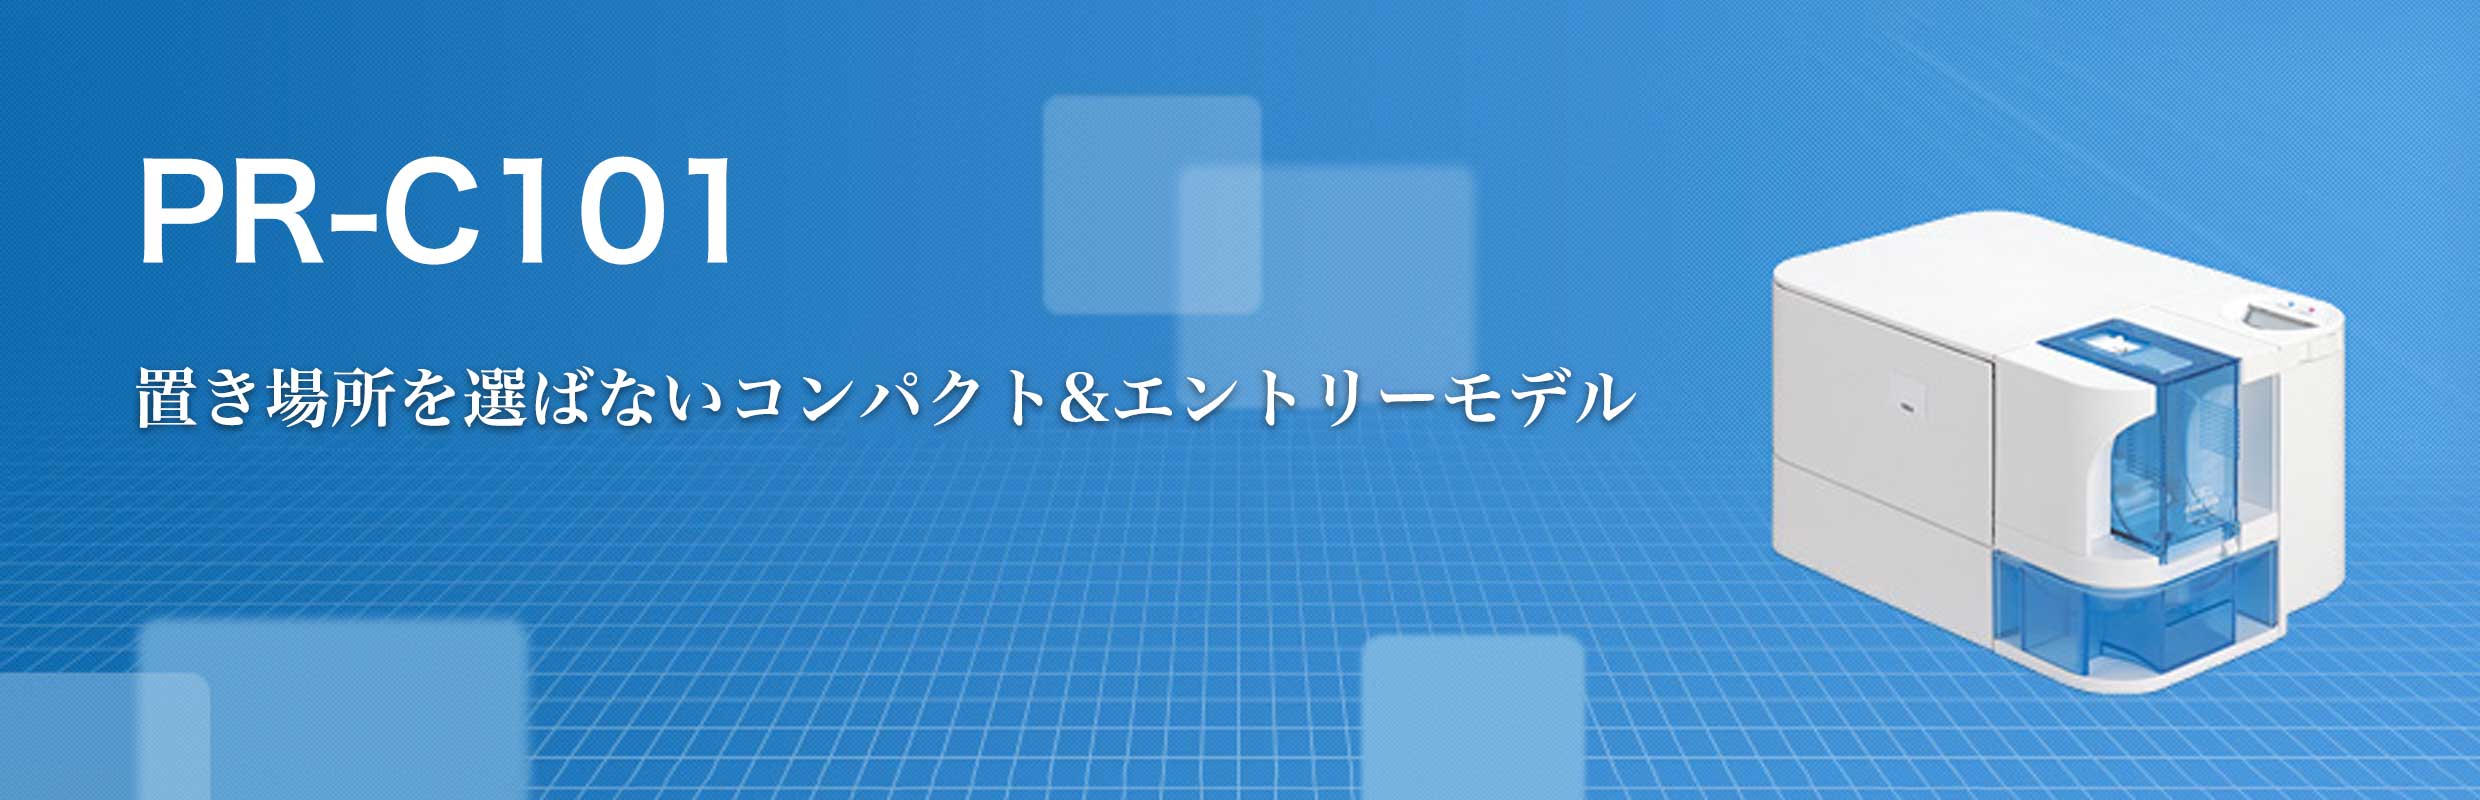 PR-C101 概要｜IDカードプリンター｜キヤノン